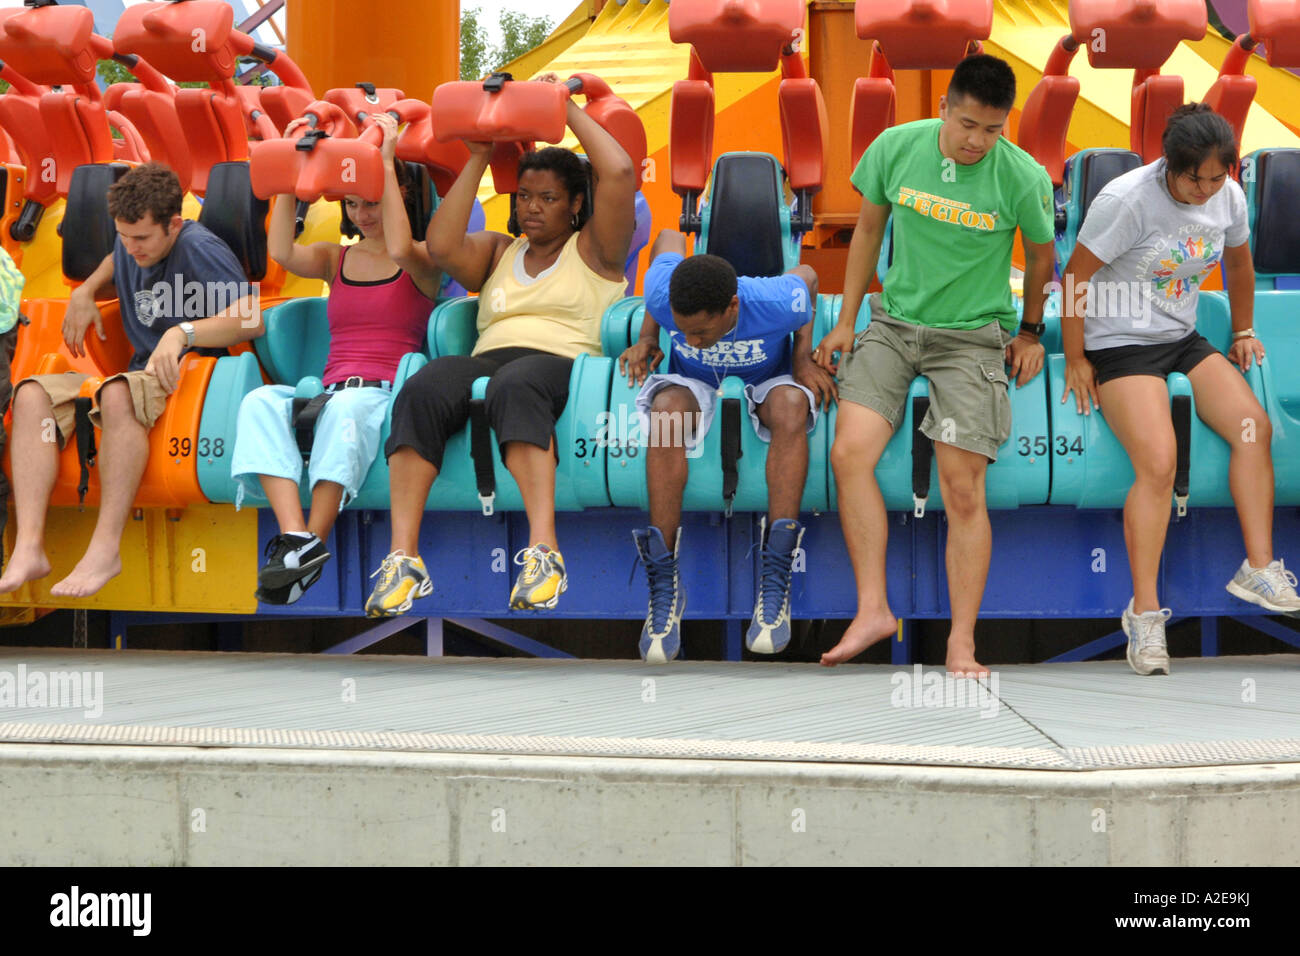 Les gens dans un cerclage ride at Cedar Point Amusement Park Sandusky, OH Banque D'Images